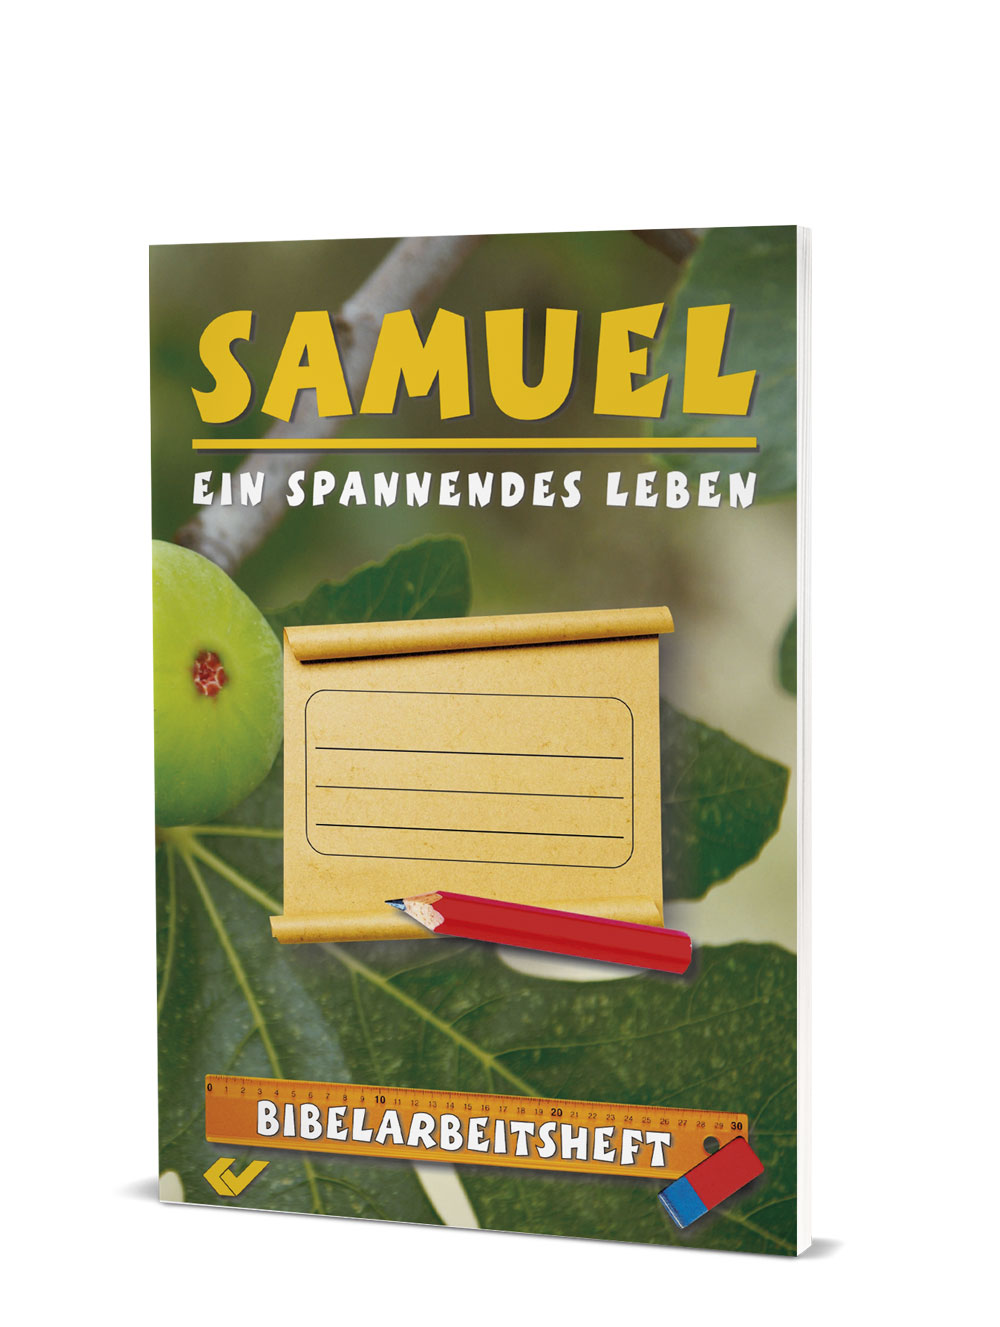 Ralf Kausemann (Hg.): Bibelarbeitsheft - Samuel - Ein spannendes Leben